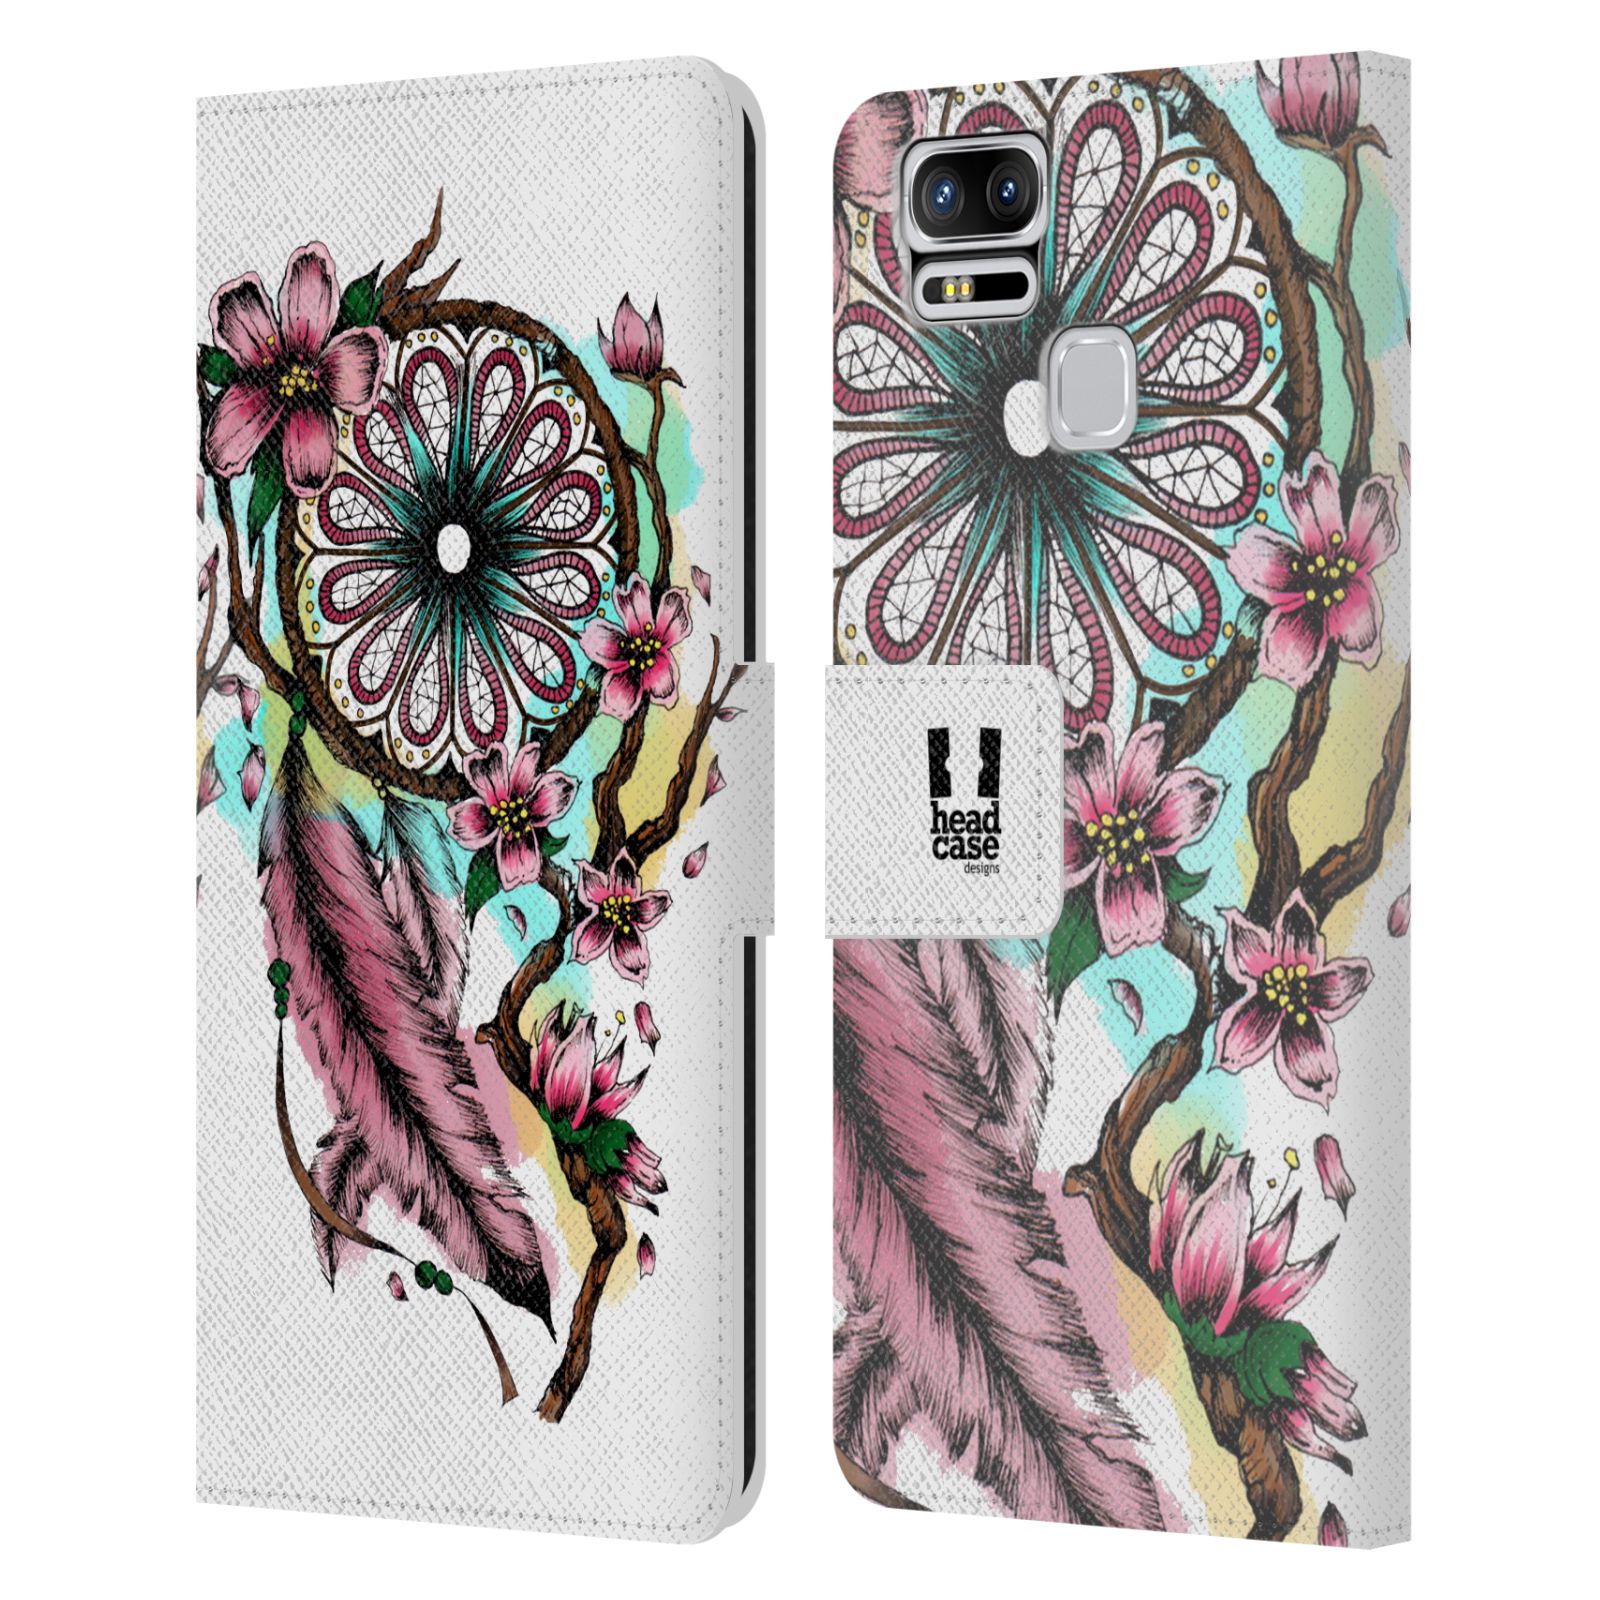 Pouzdro na mobil Asus Zenfone 3 Zoom ZE553KL - Head Case - Lapač snů květy fialová